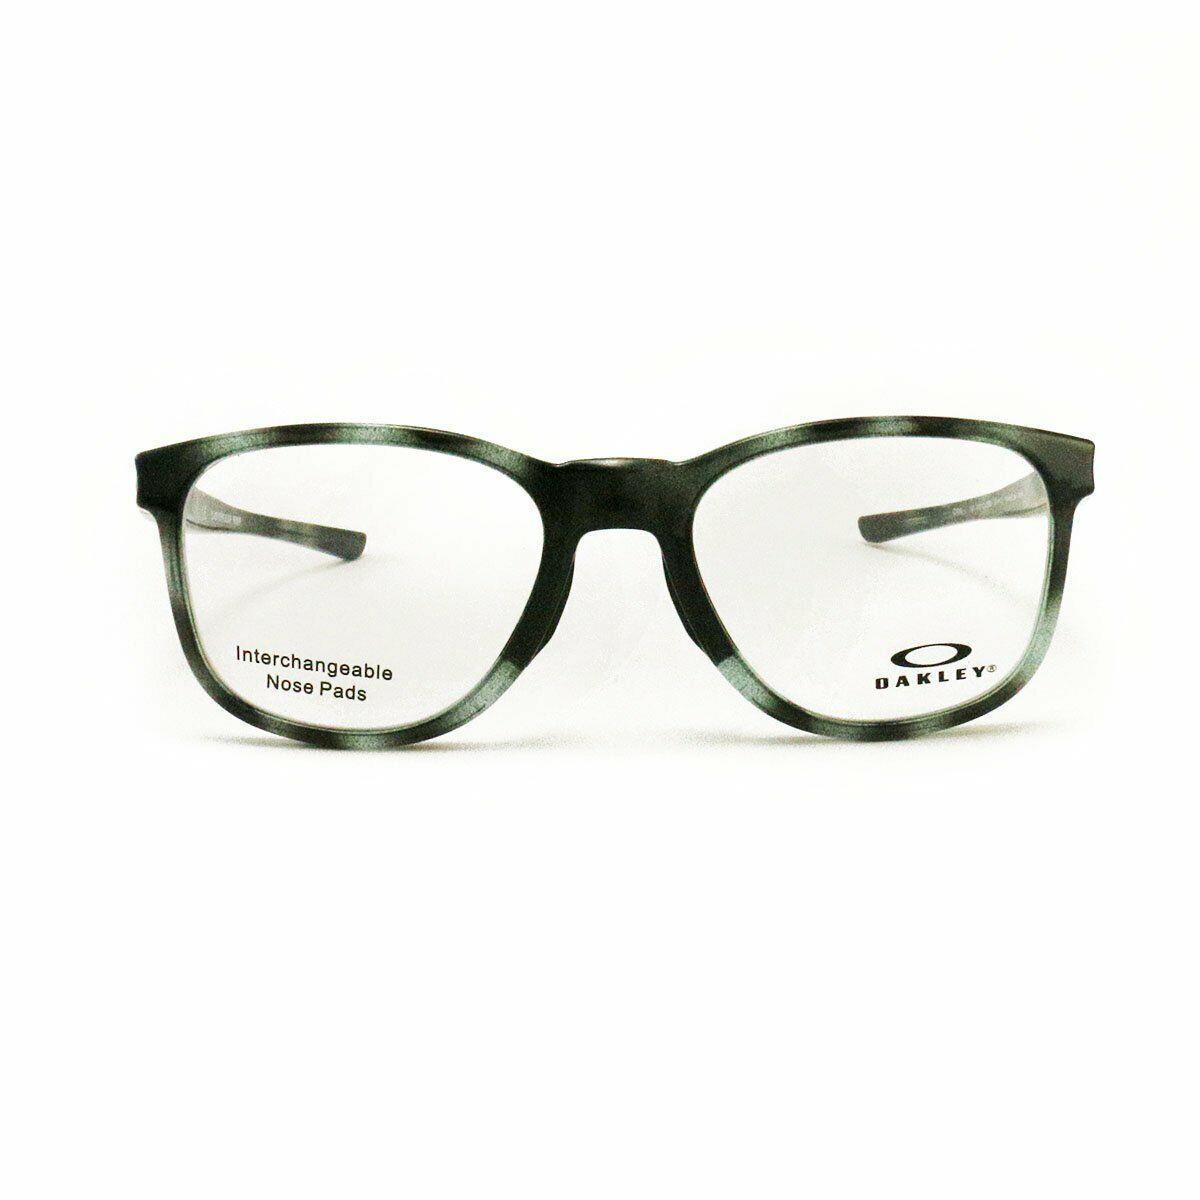 Oakley Cloverleaf Mnp Gray Tortoise Plastic Eyeglasses OX8102-0555 52-18-135 - Gray , Tortoise Frame, Clear Lens